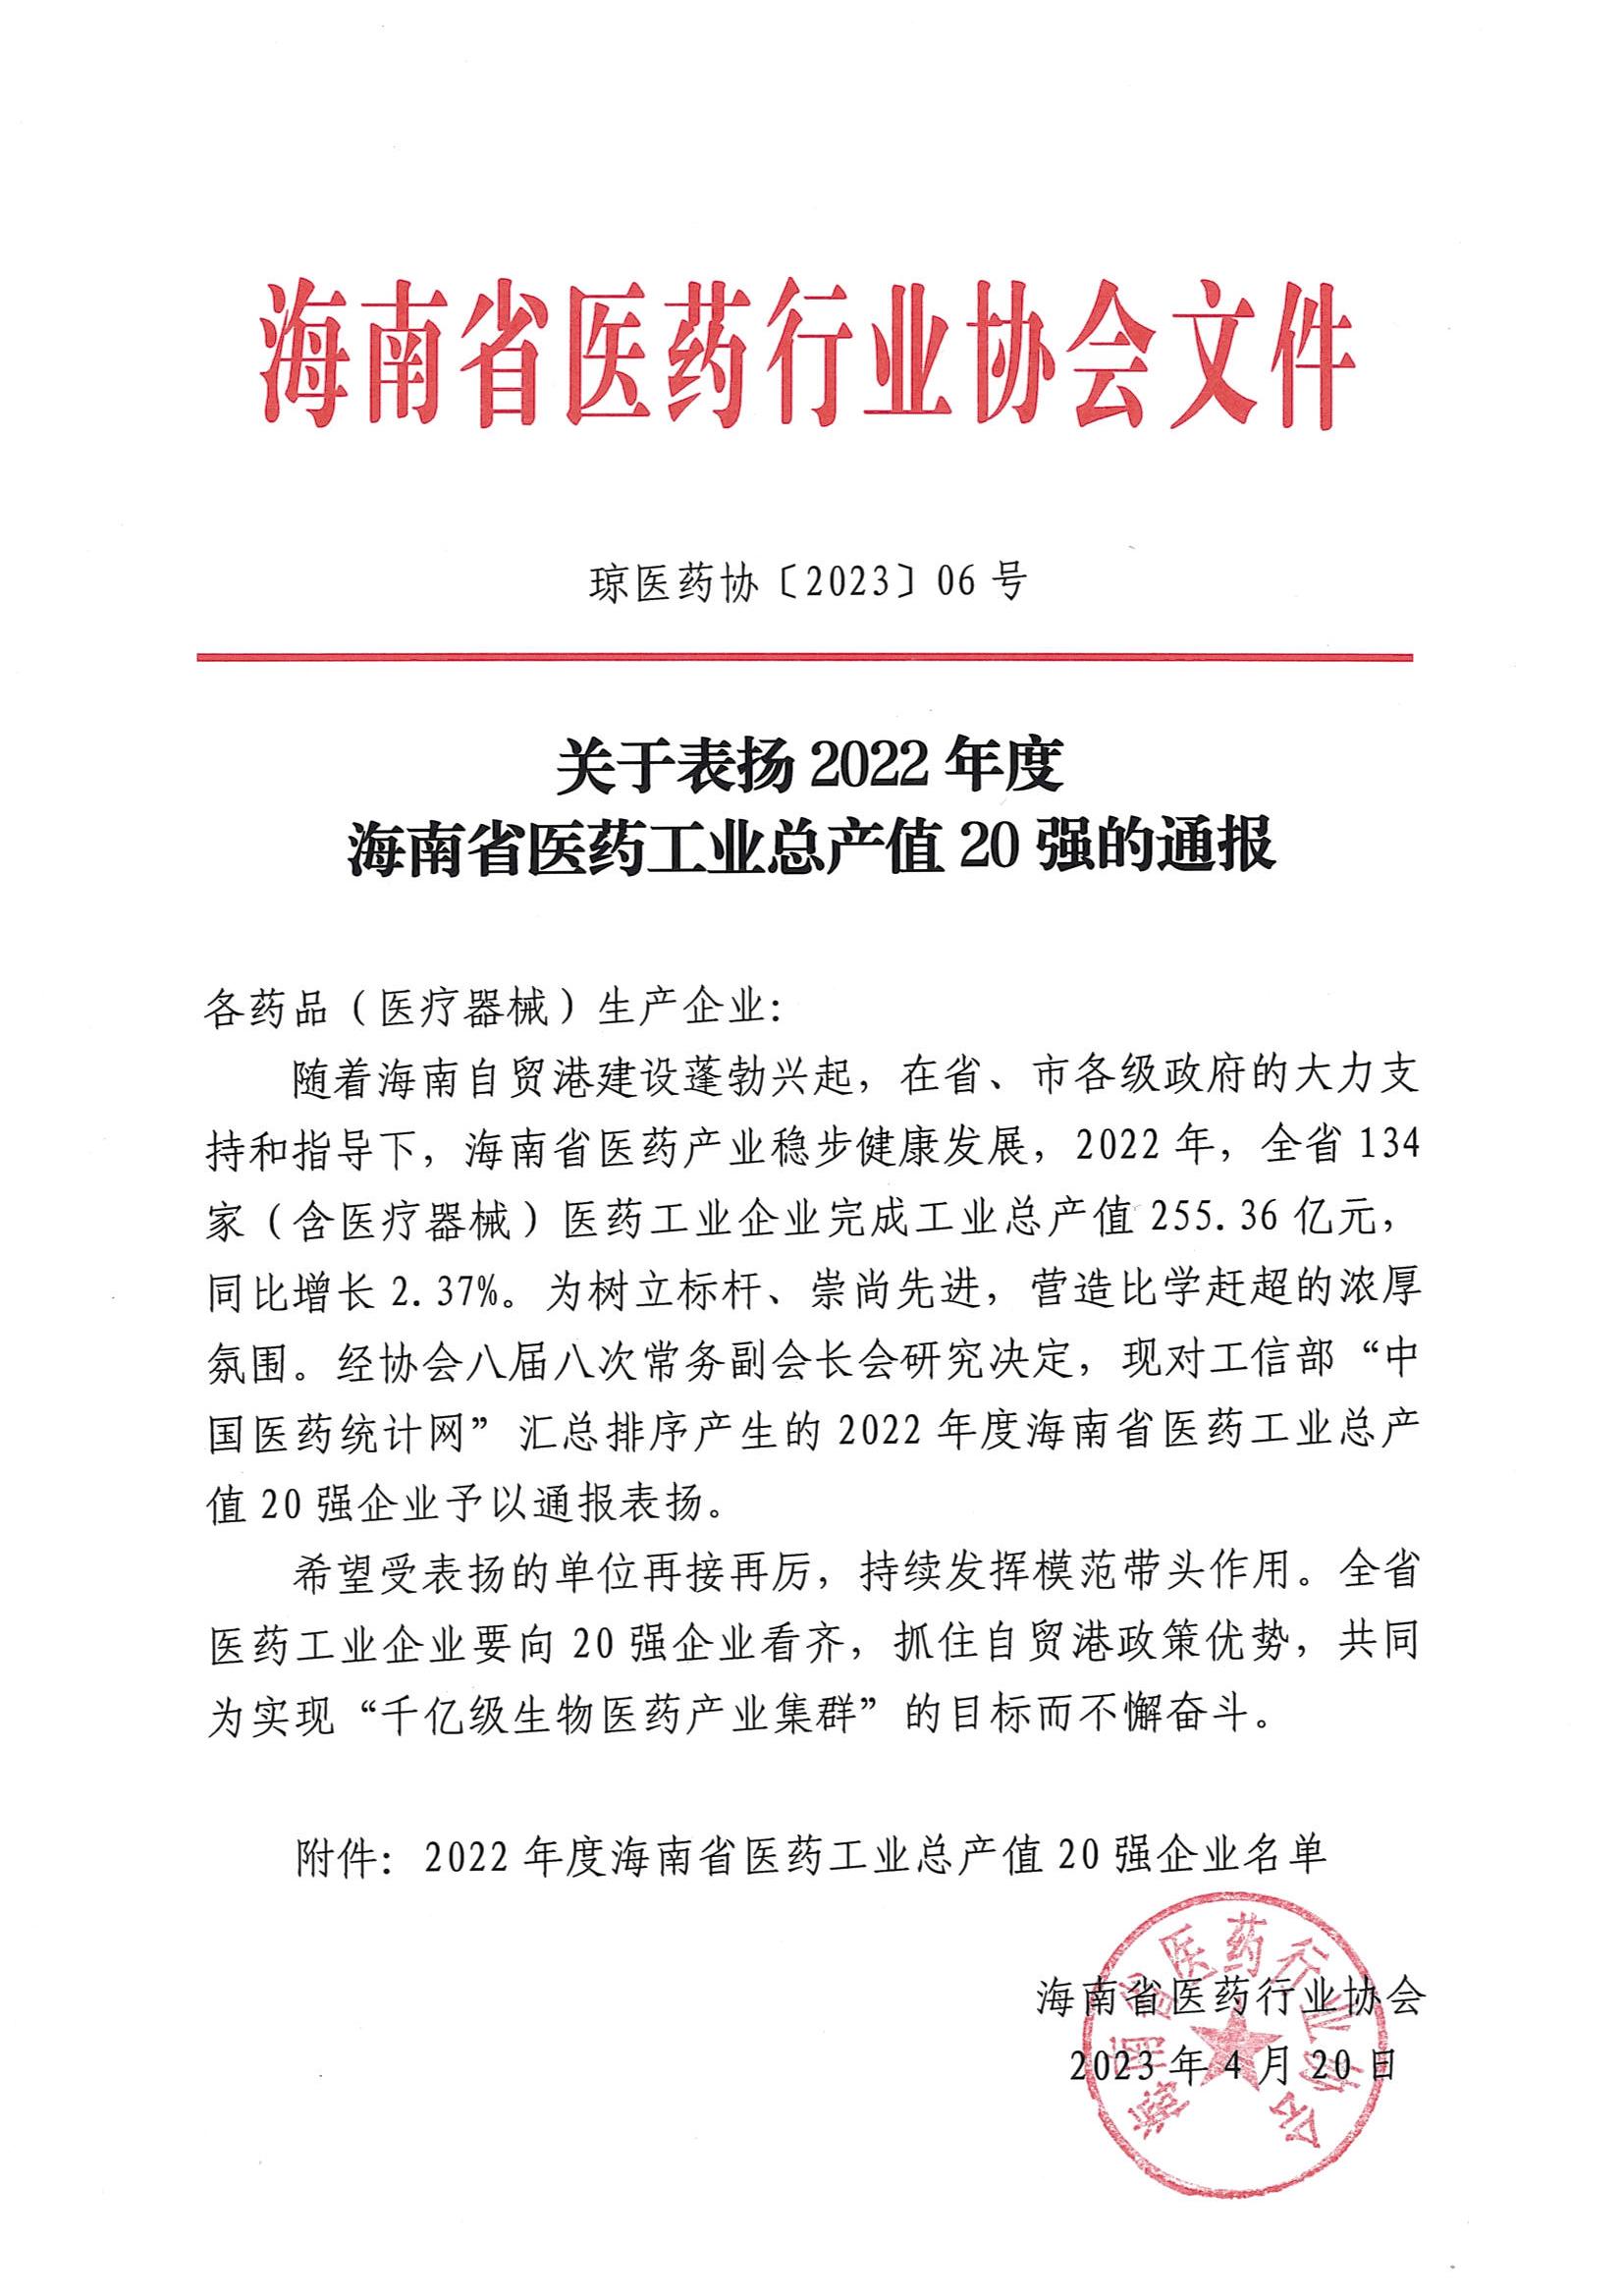 关于表扬2022年度海南省医药工业总产值20强的通报_00.jpg